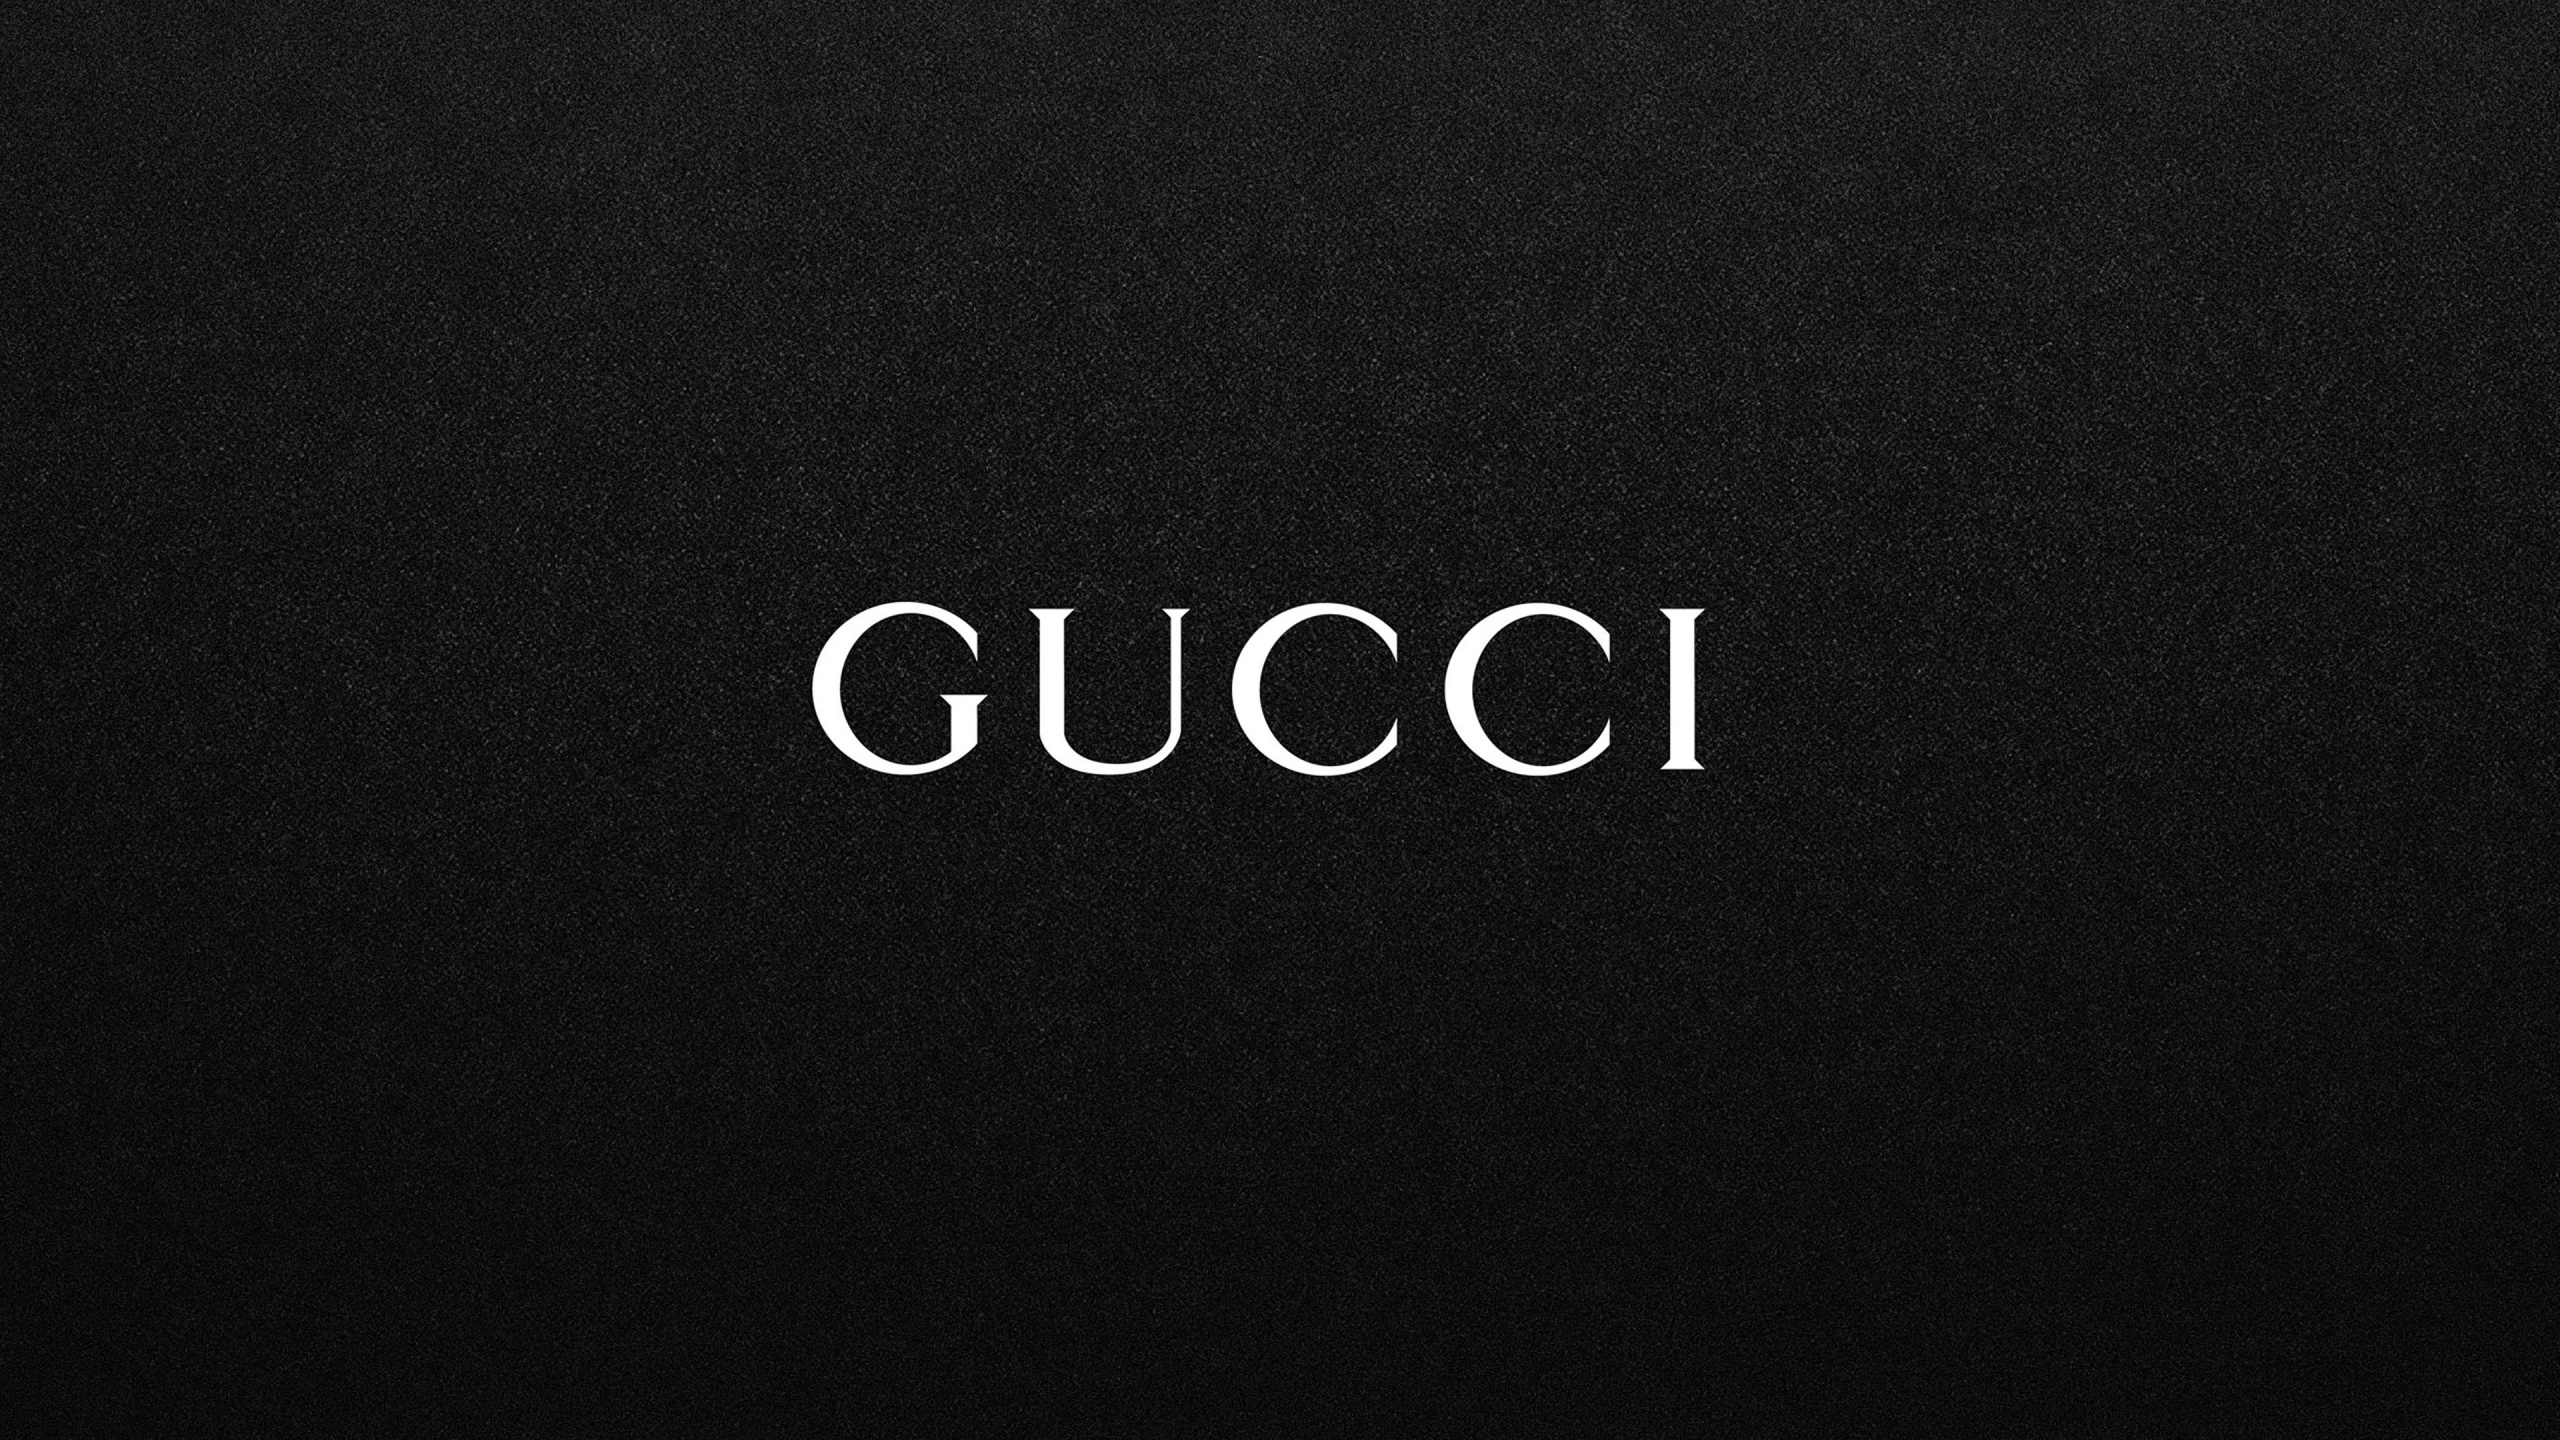 Logotipo, Negro, Gucci, Texto, Marca. Wallpaper in 2560x1440 Resolution